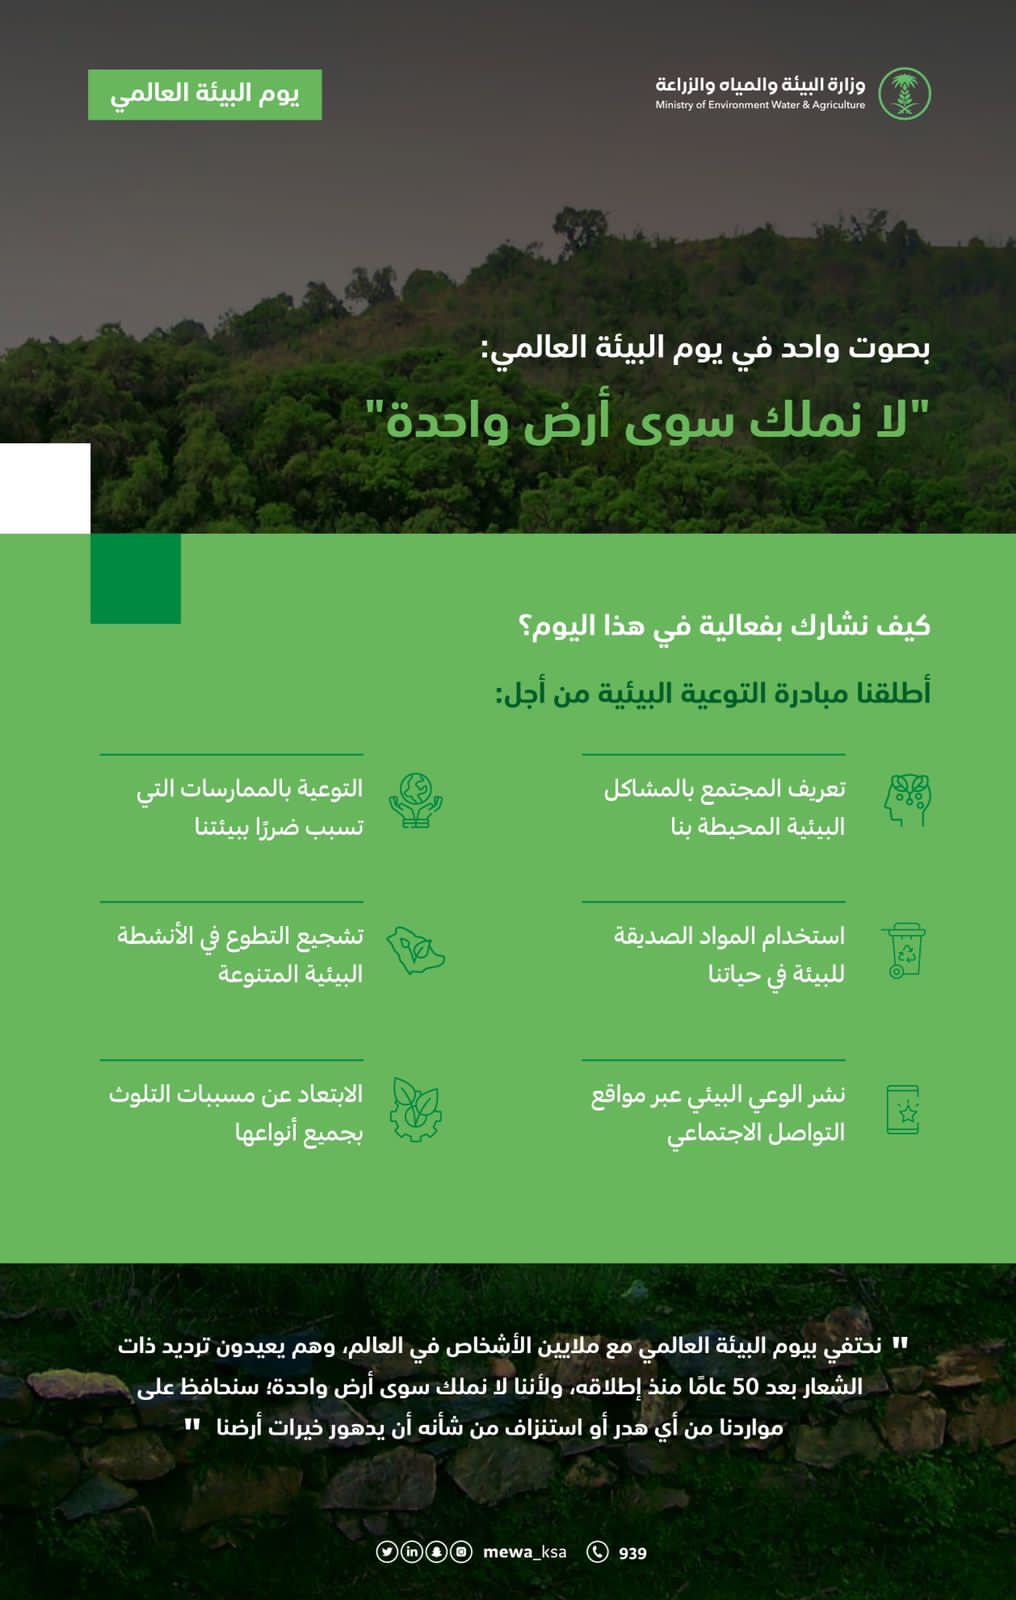 وزارة البيئة والمياه والزراعة تُدشن مبادرة” التوعية البيئية”